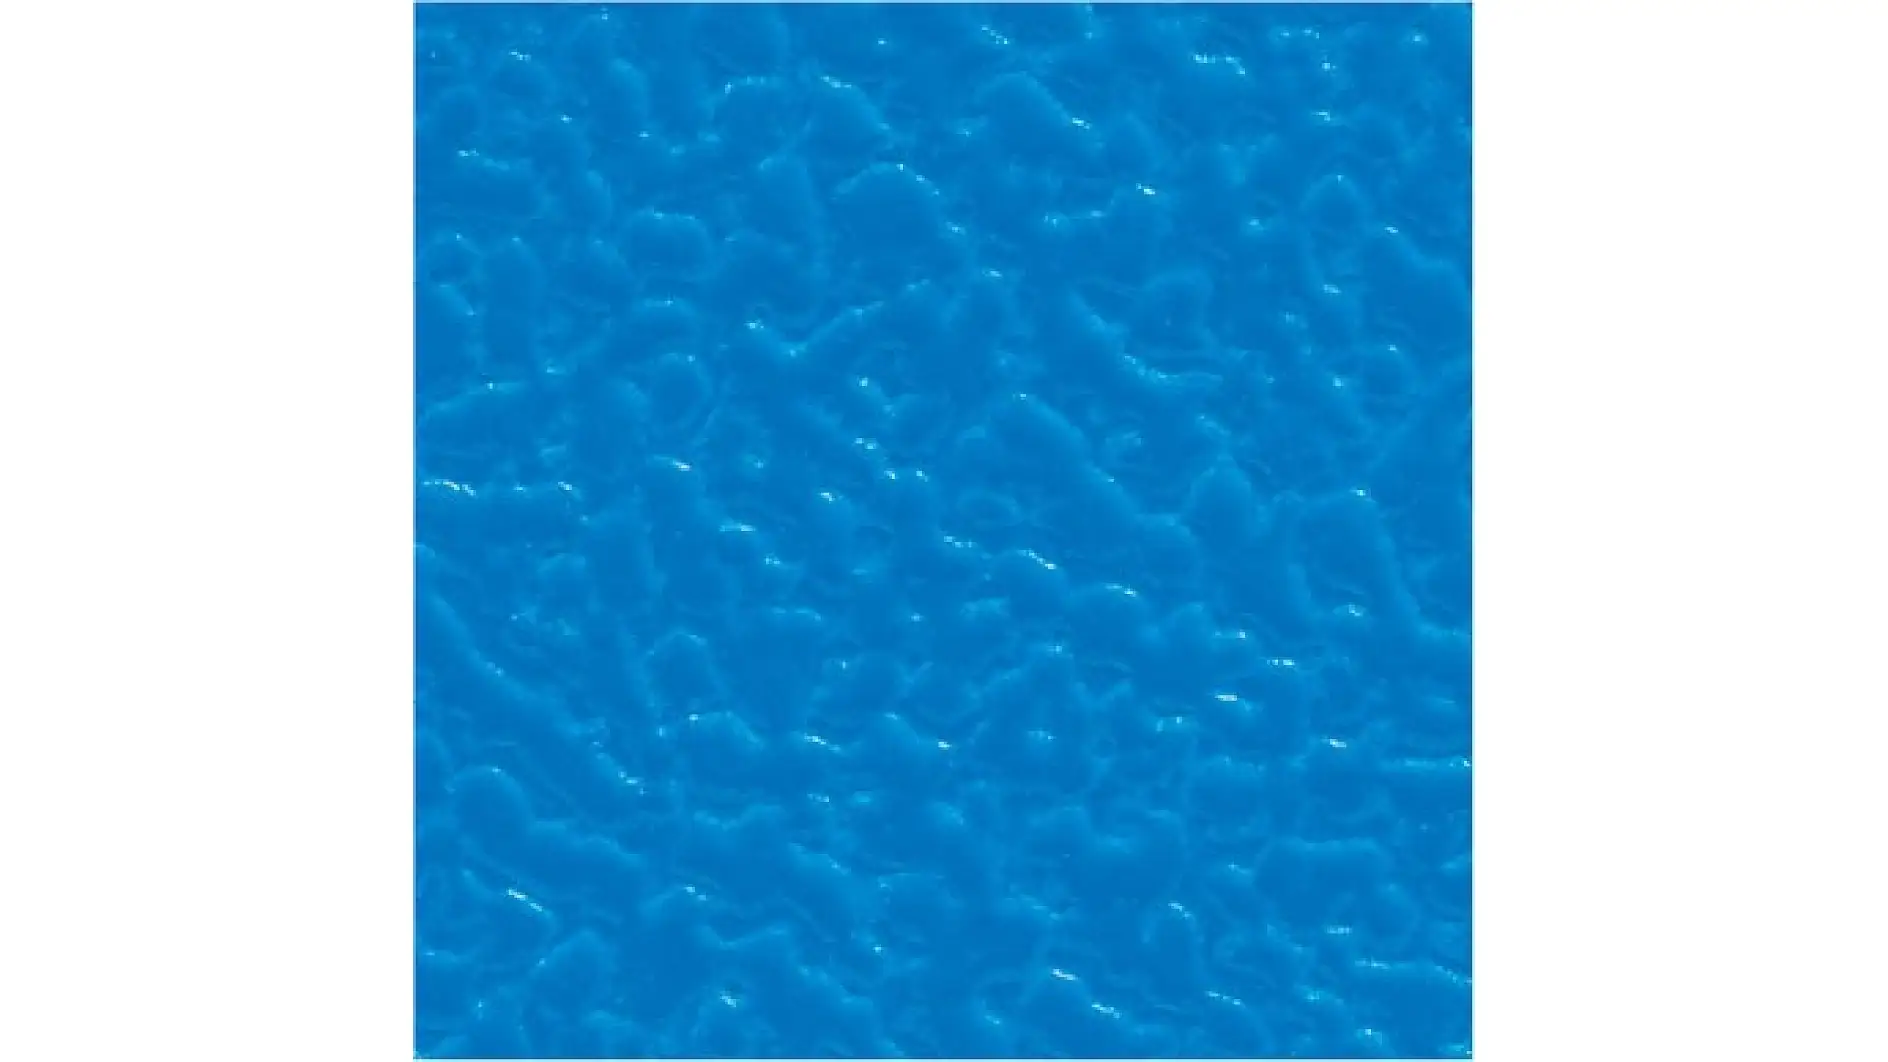 Imaginea unei bucati albastre de plastic